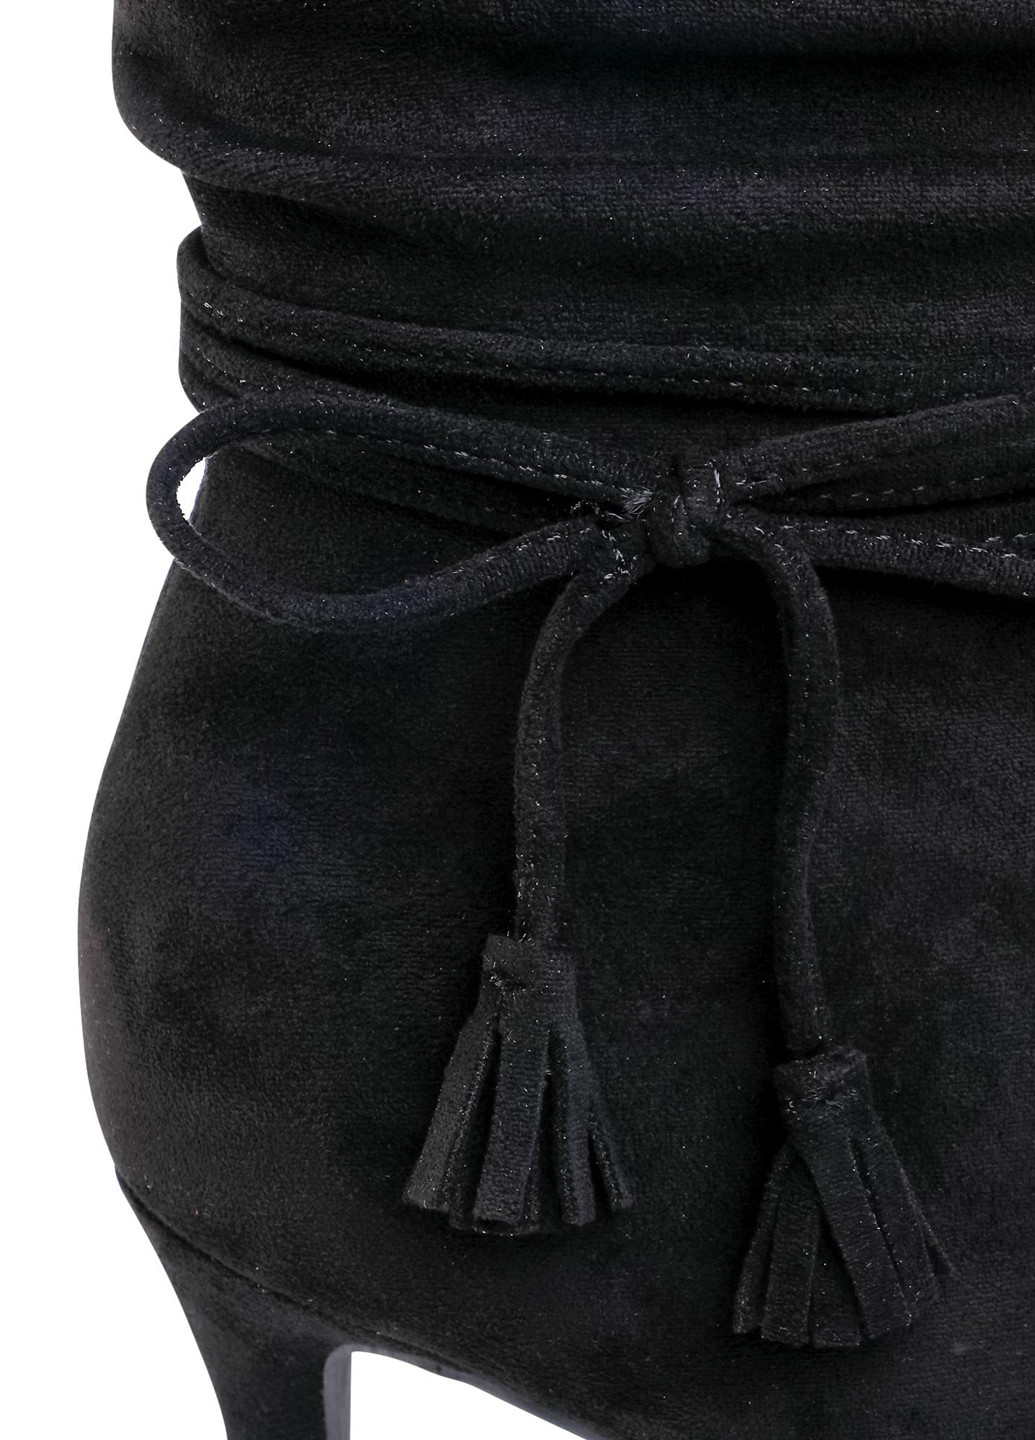 Черные осенние черевики ls5268-08 DeeZee